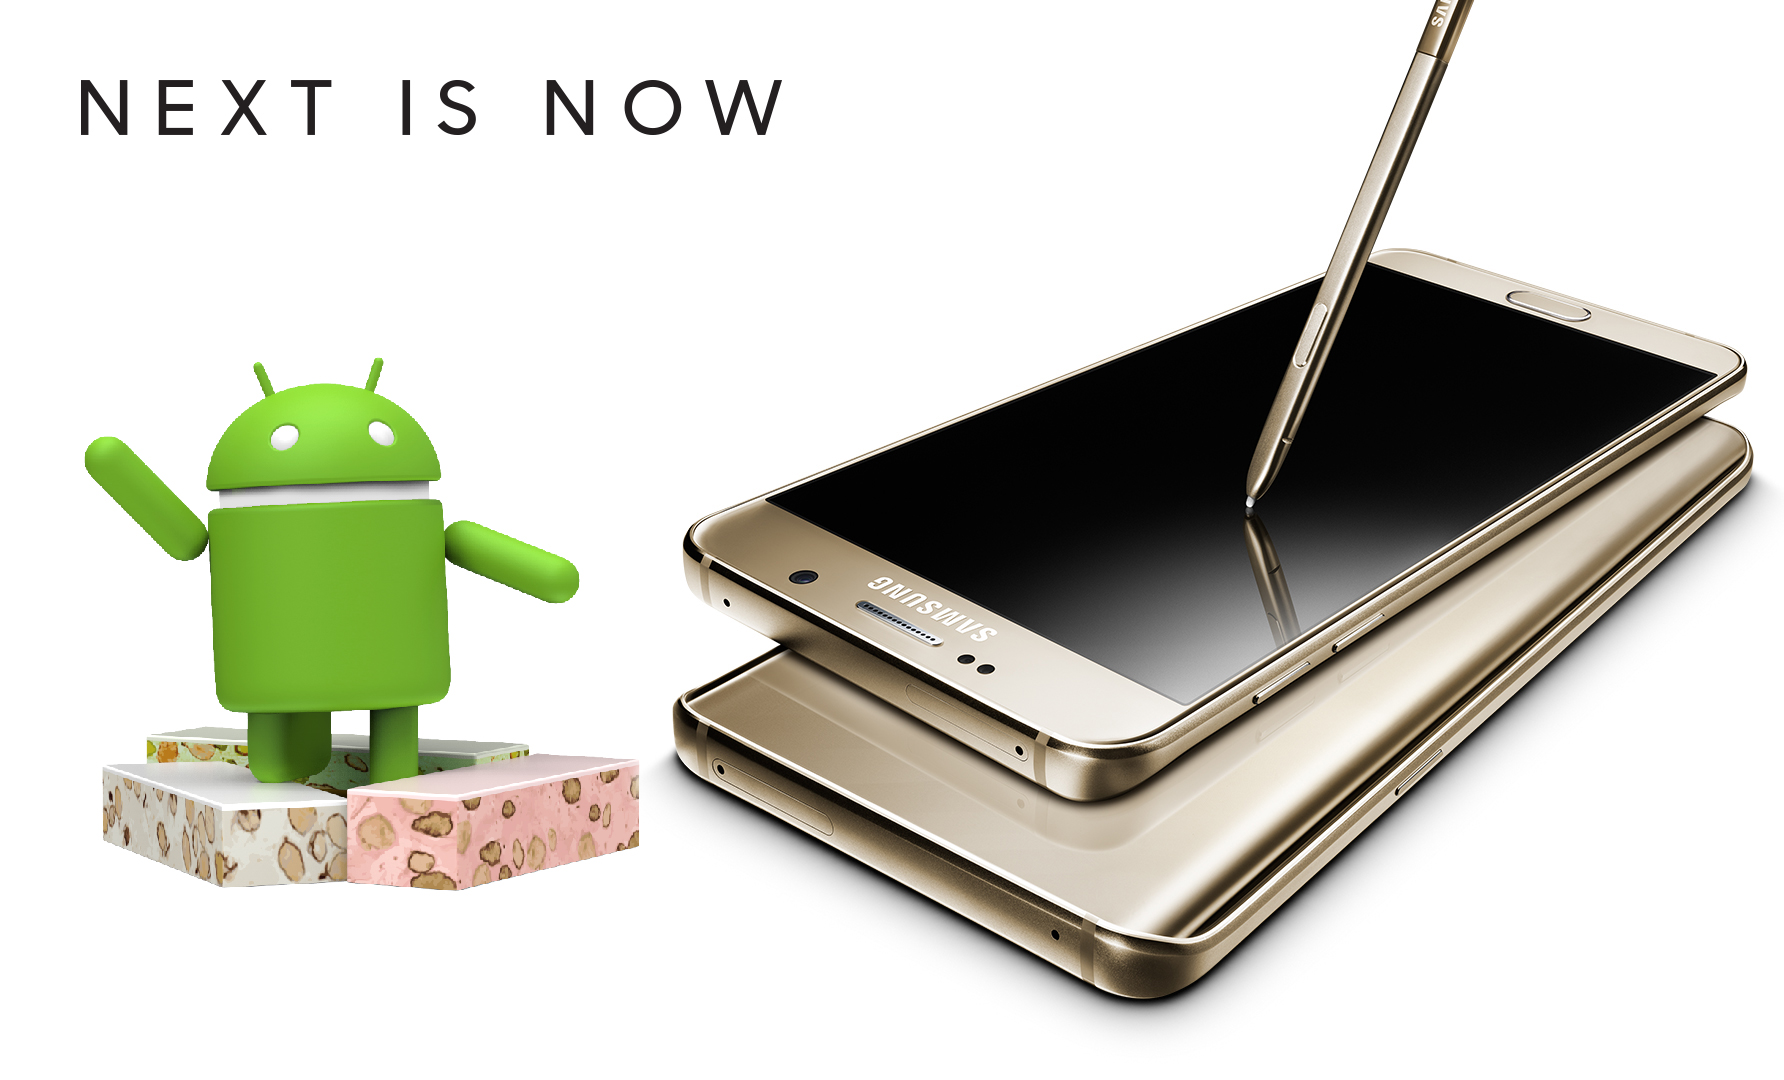 เตรียมอัพเดท !!  หลุดรายละเอียด Samsung Galaxy Note 5 จะได้รับอัพเดท Android 7.0 Nougat เร็ว ๆ นี้ !!